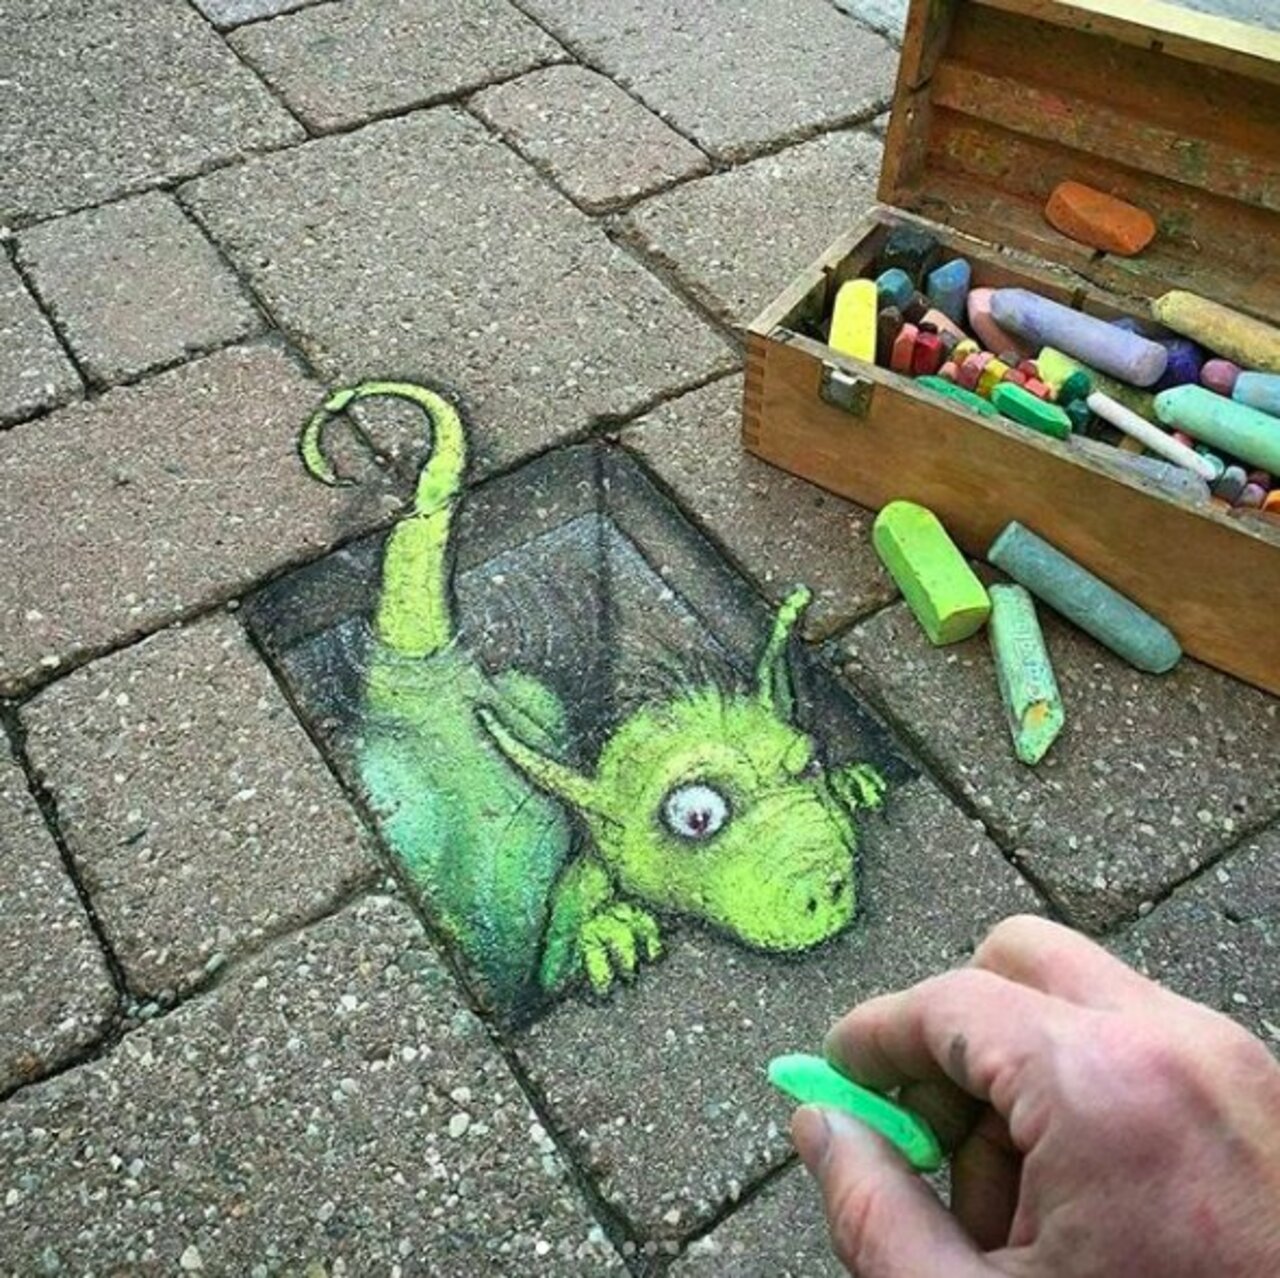 A really cute little creature by @davidzinn_art! Hi buddy! -- #globalstreetart #streetart #art #graffiti https://t.co/dXRy3Fn0VY